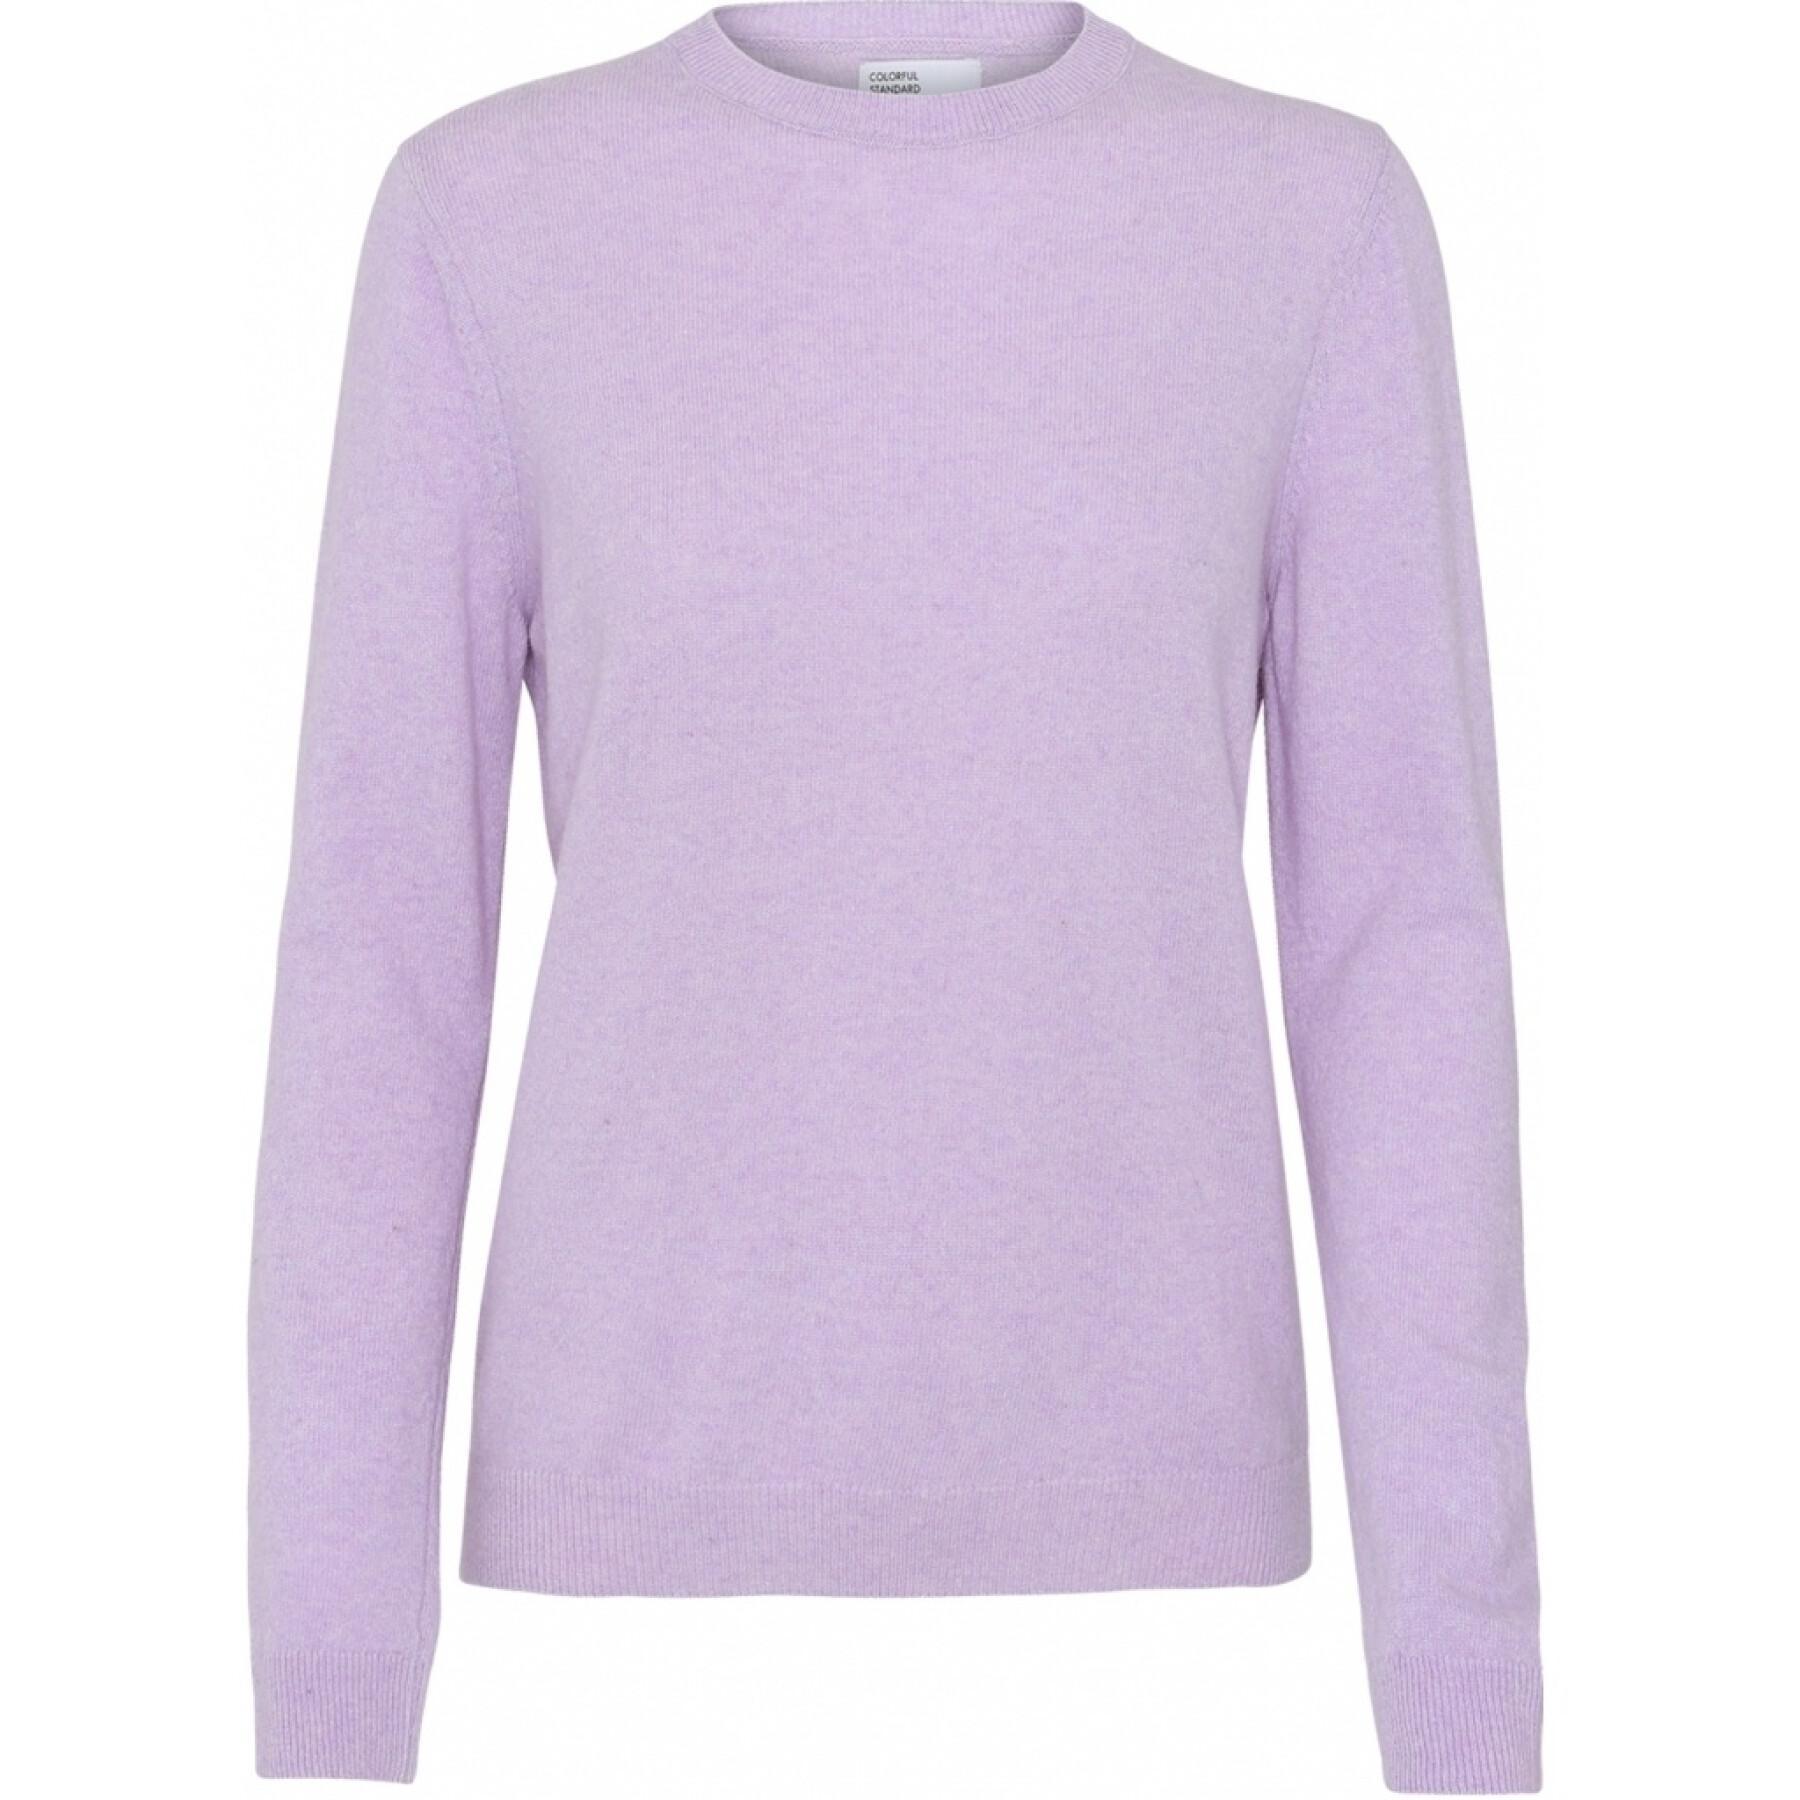 Jersey de lana con cuello redondo para mujer Colorful Standard light merino soft lavender